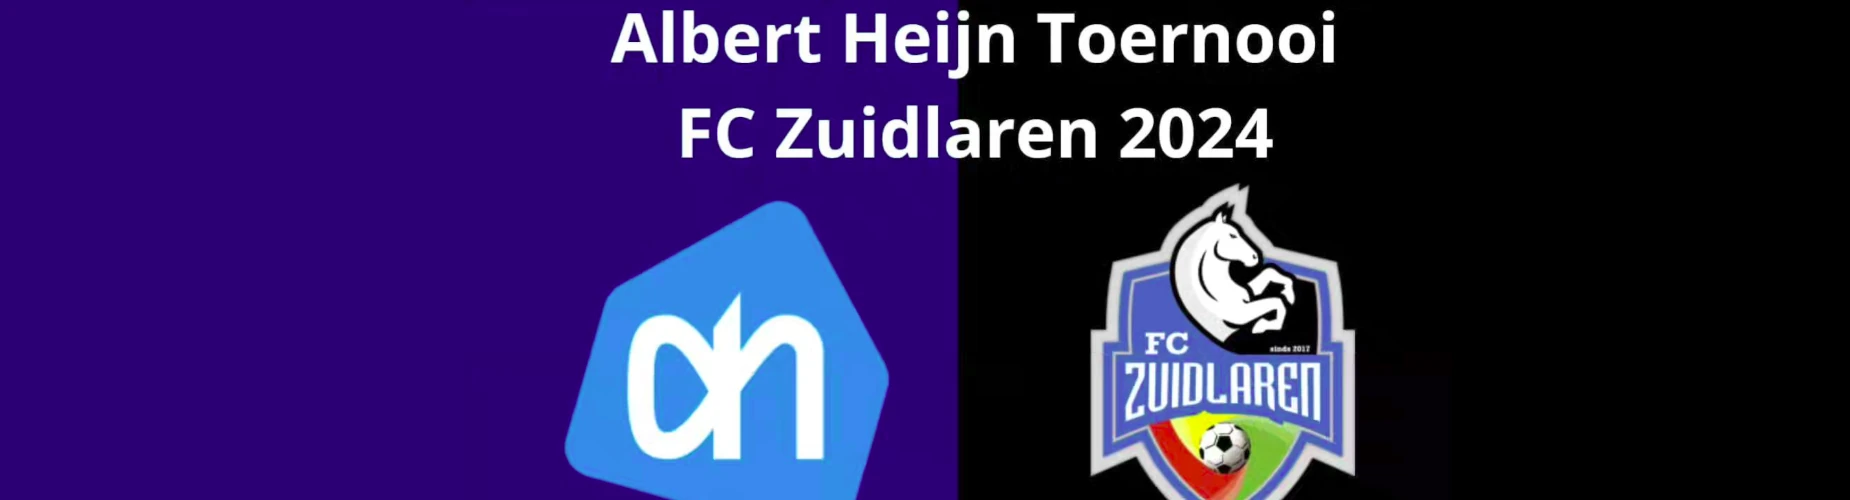 Banner - Albert Heijn toernooi FC Zuidlaren - FC Zuidlaren - Zuidlaren